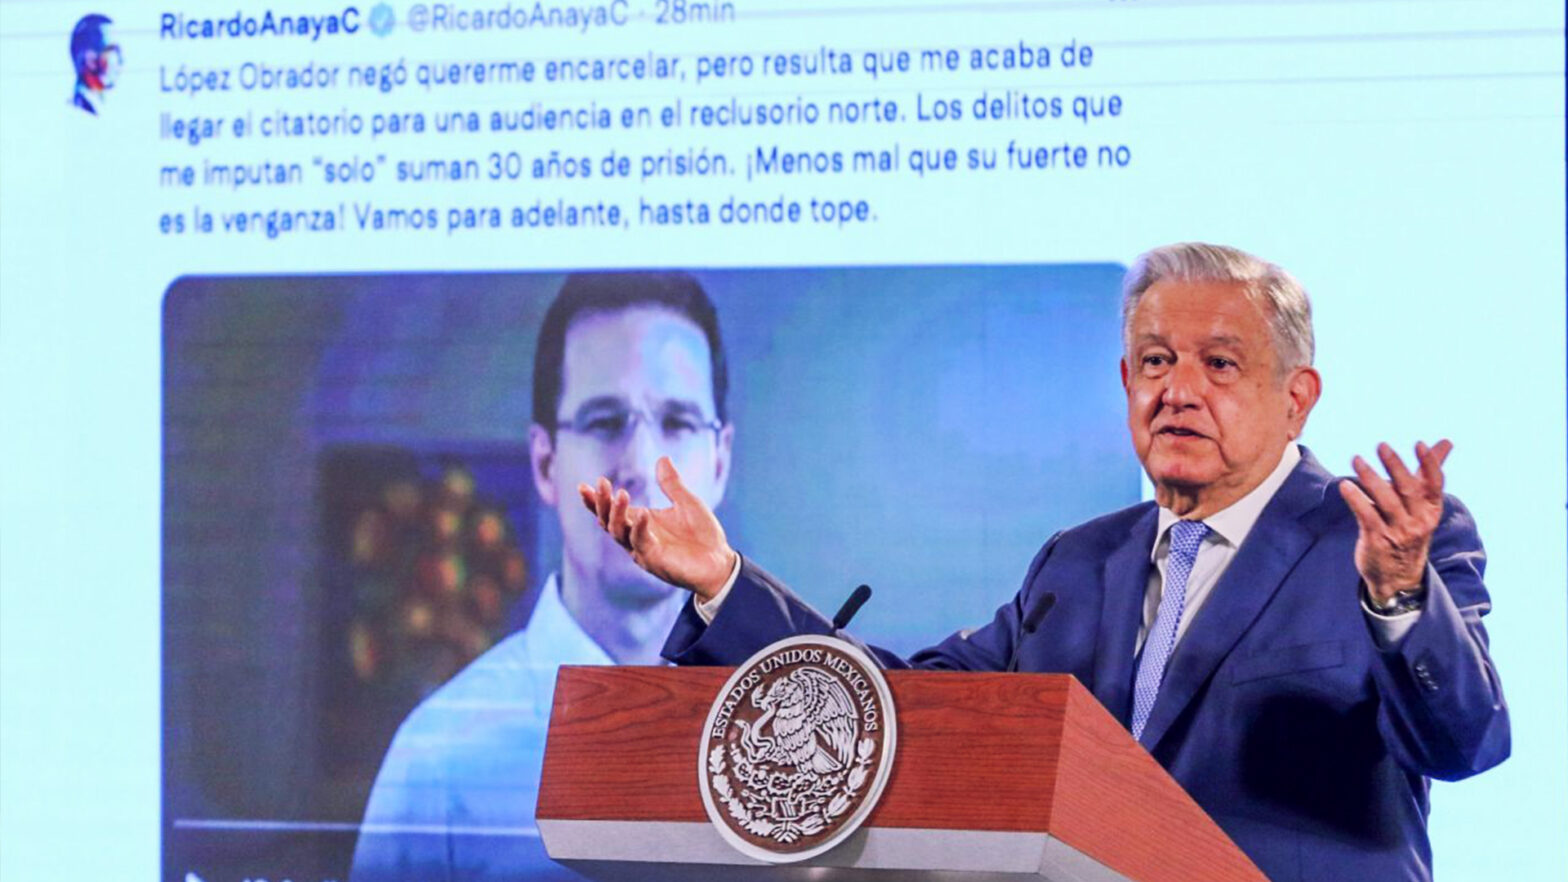 EL presidente hablando sobre las acusaciones de Ricardo Anaya